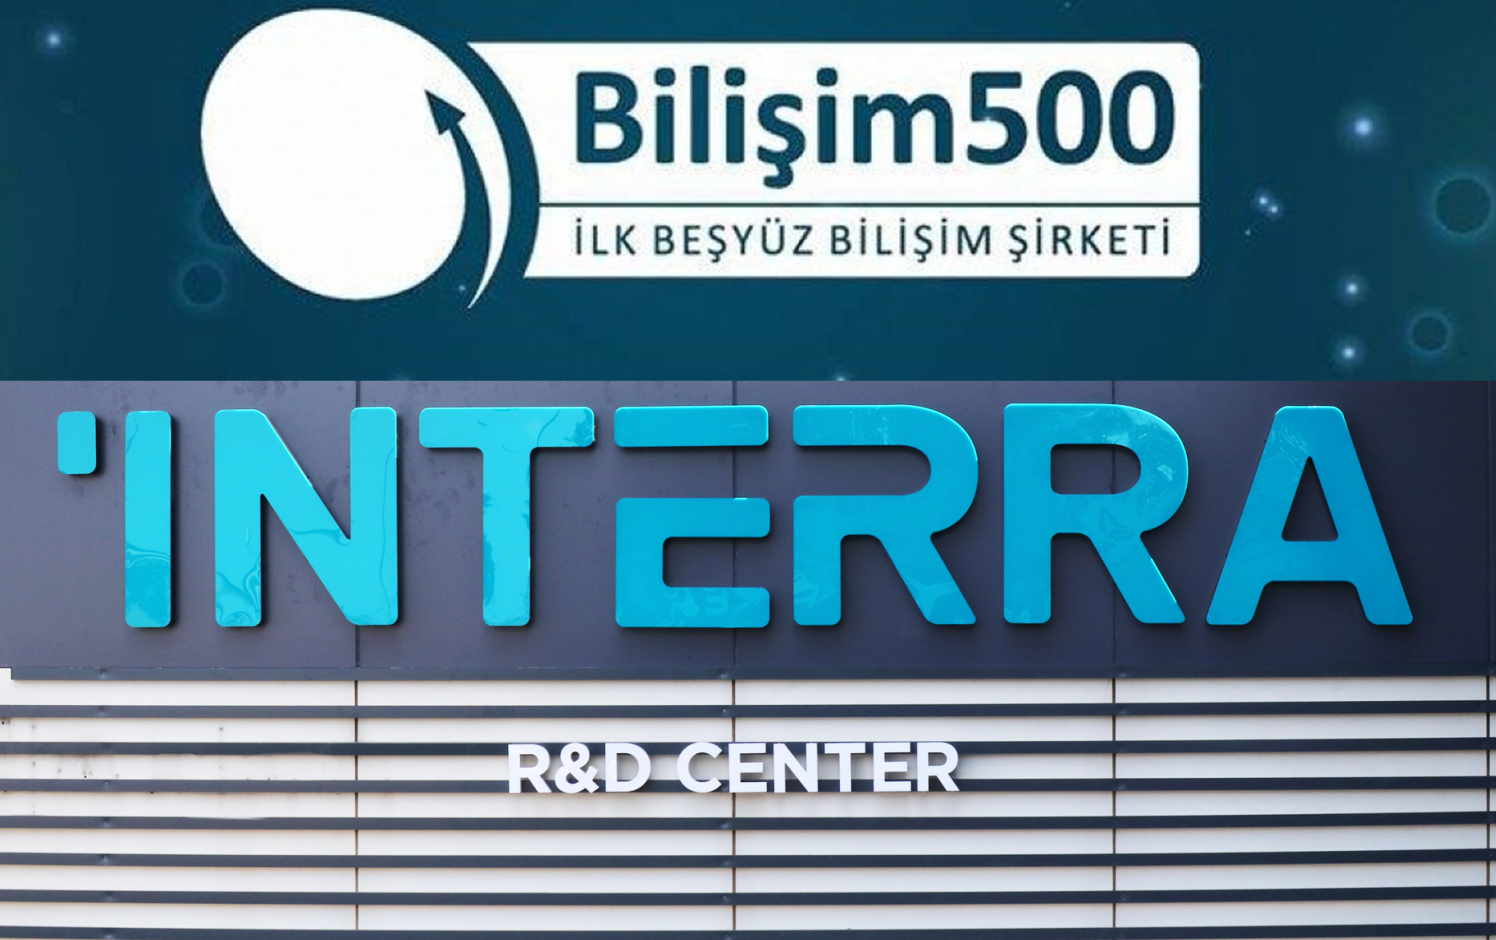 Interra Technology wurde der zweitgrößte Hersteller mit Sitz in Türkei!